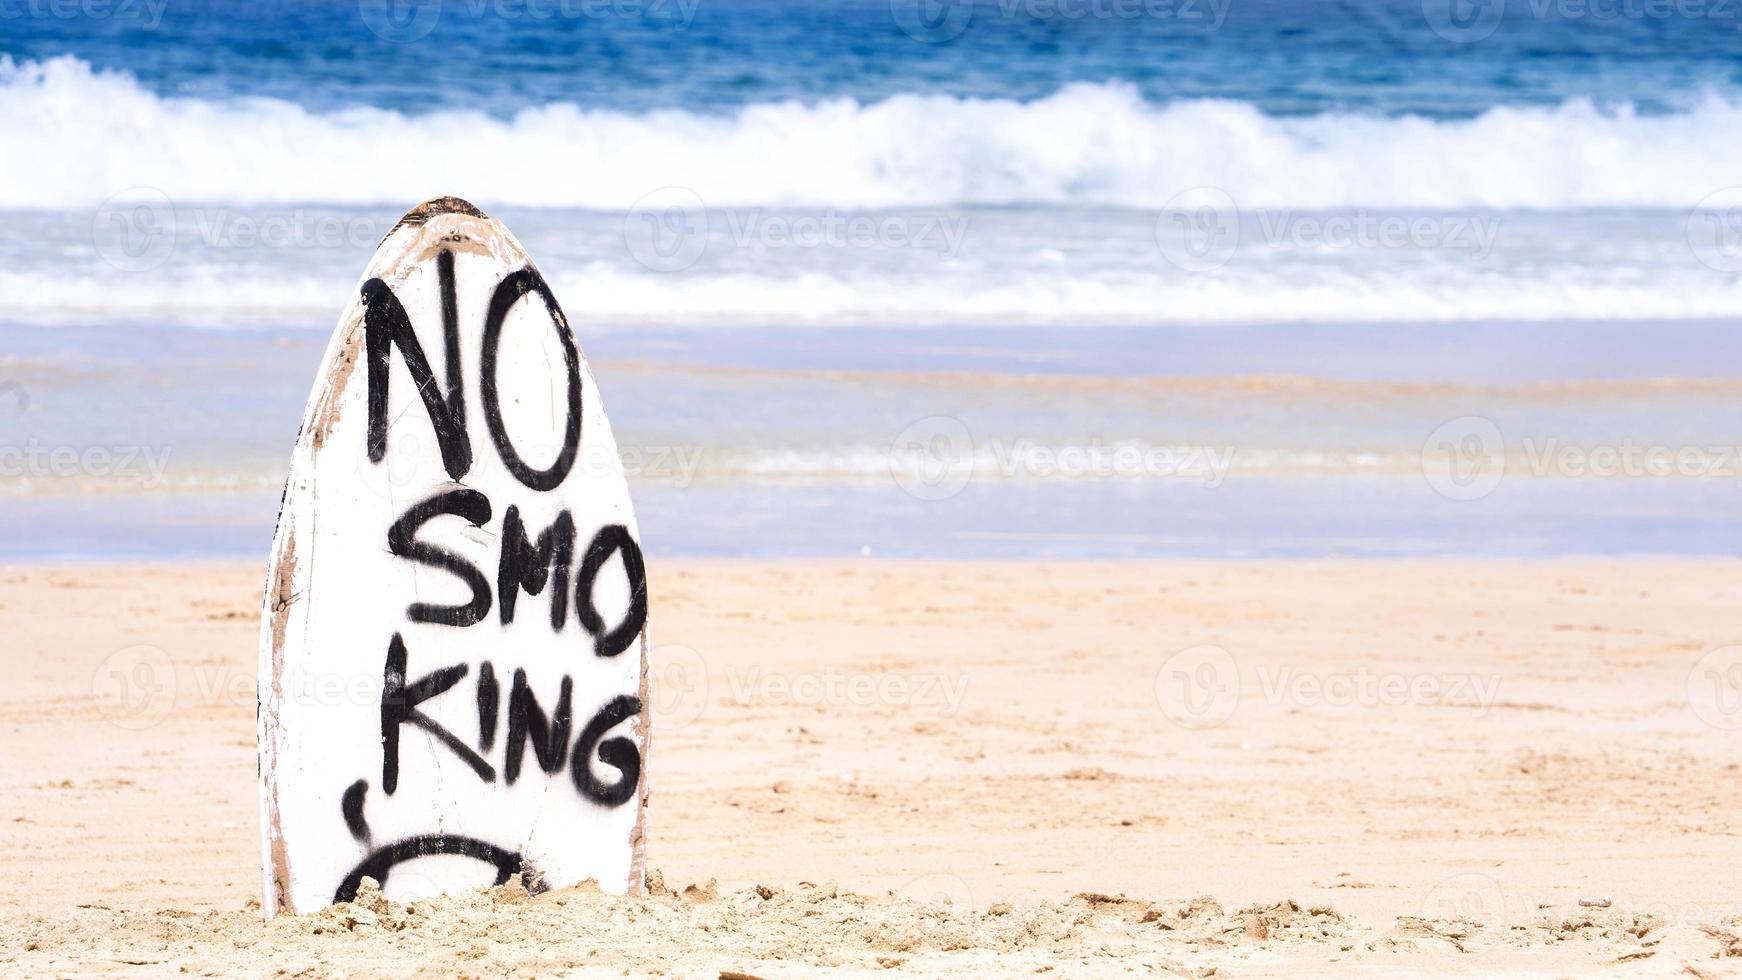 niet roken waarschuwingsbord op witte surfplank op het strand in de zomer, concept van zee milieubescherming ontwerp, kopieer ruimte, levensstijl. foto